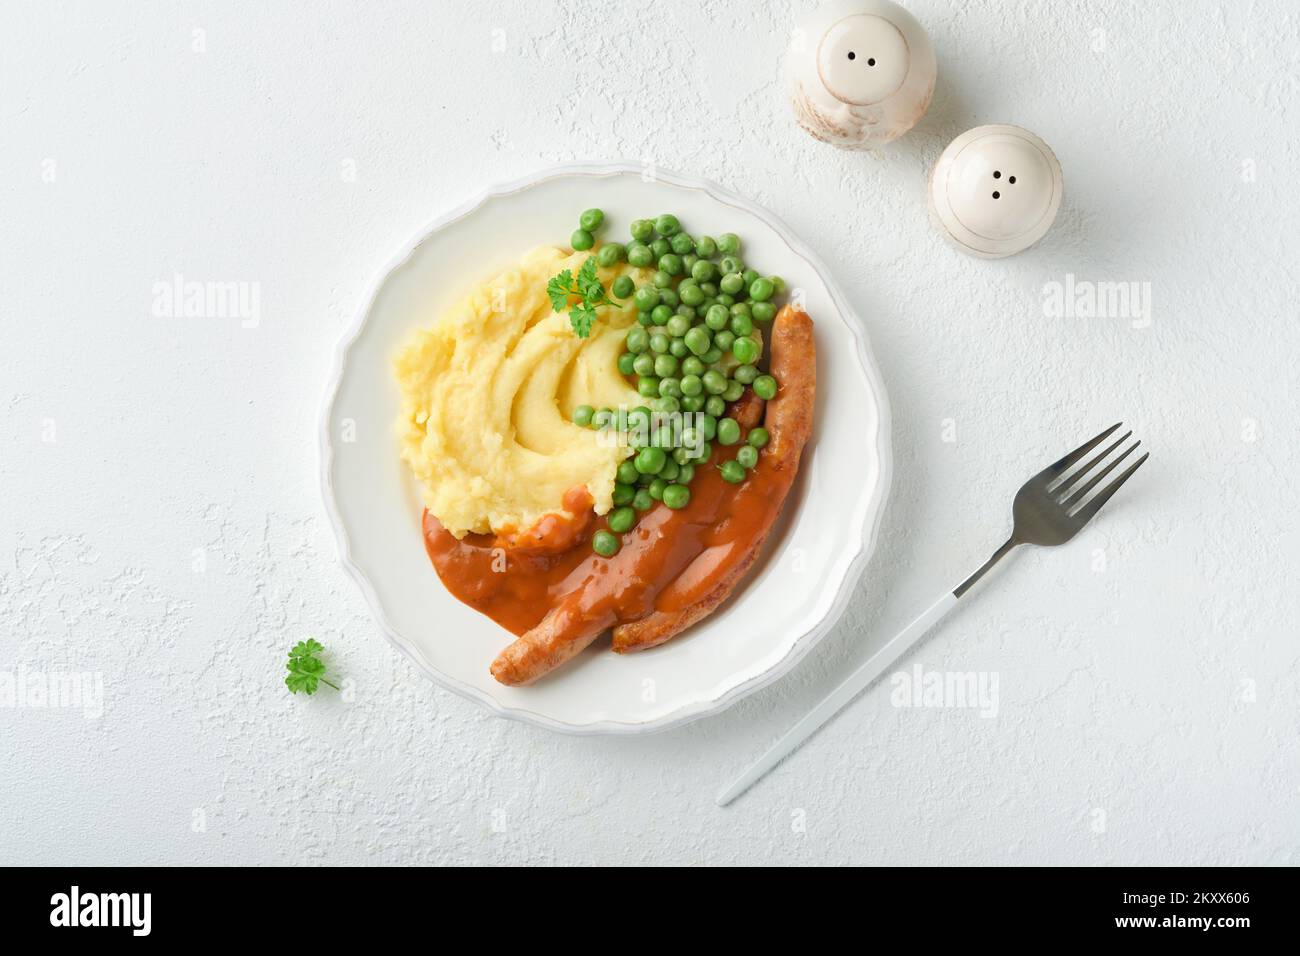 Knaller und Püree. Gegrillte Würstchen mit Kartoffelpüree und grüner Erbse auf weißem Teller auf hellem Hintergrund. Traditionelles Gericht aus Großbritannien und Irland. B Stockfoto